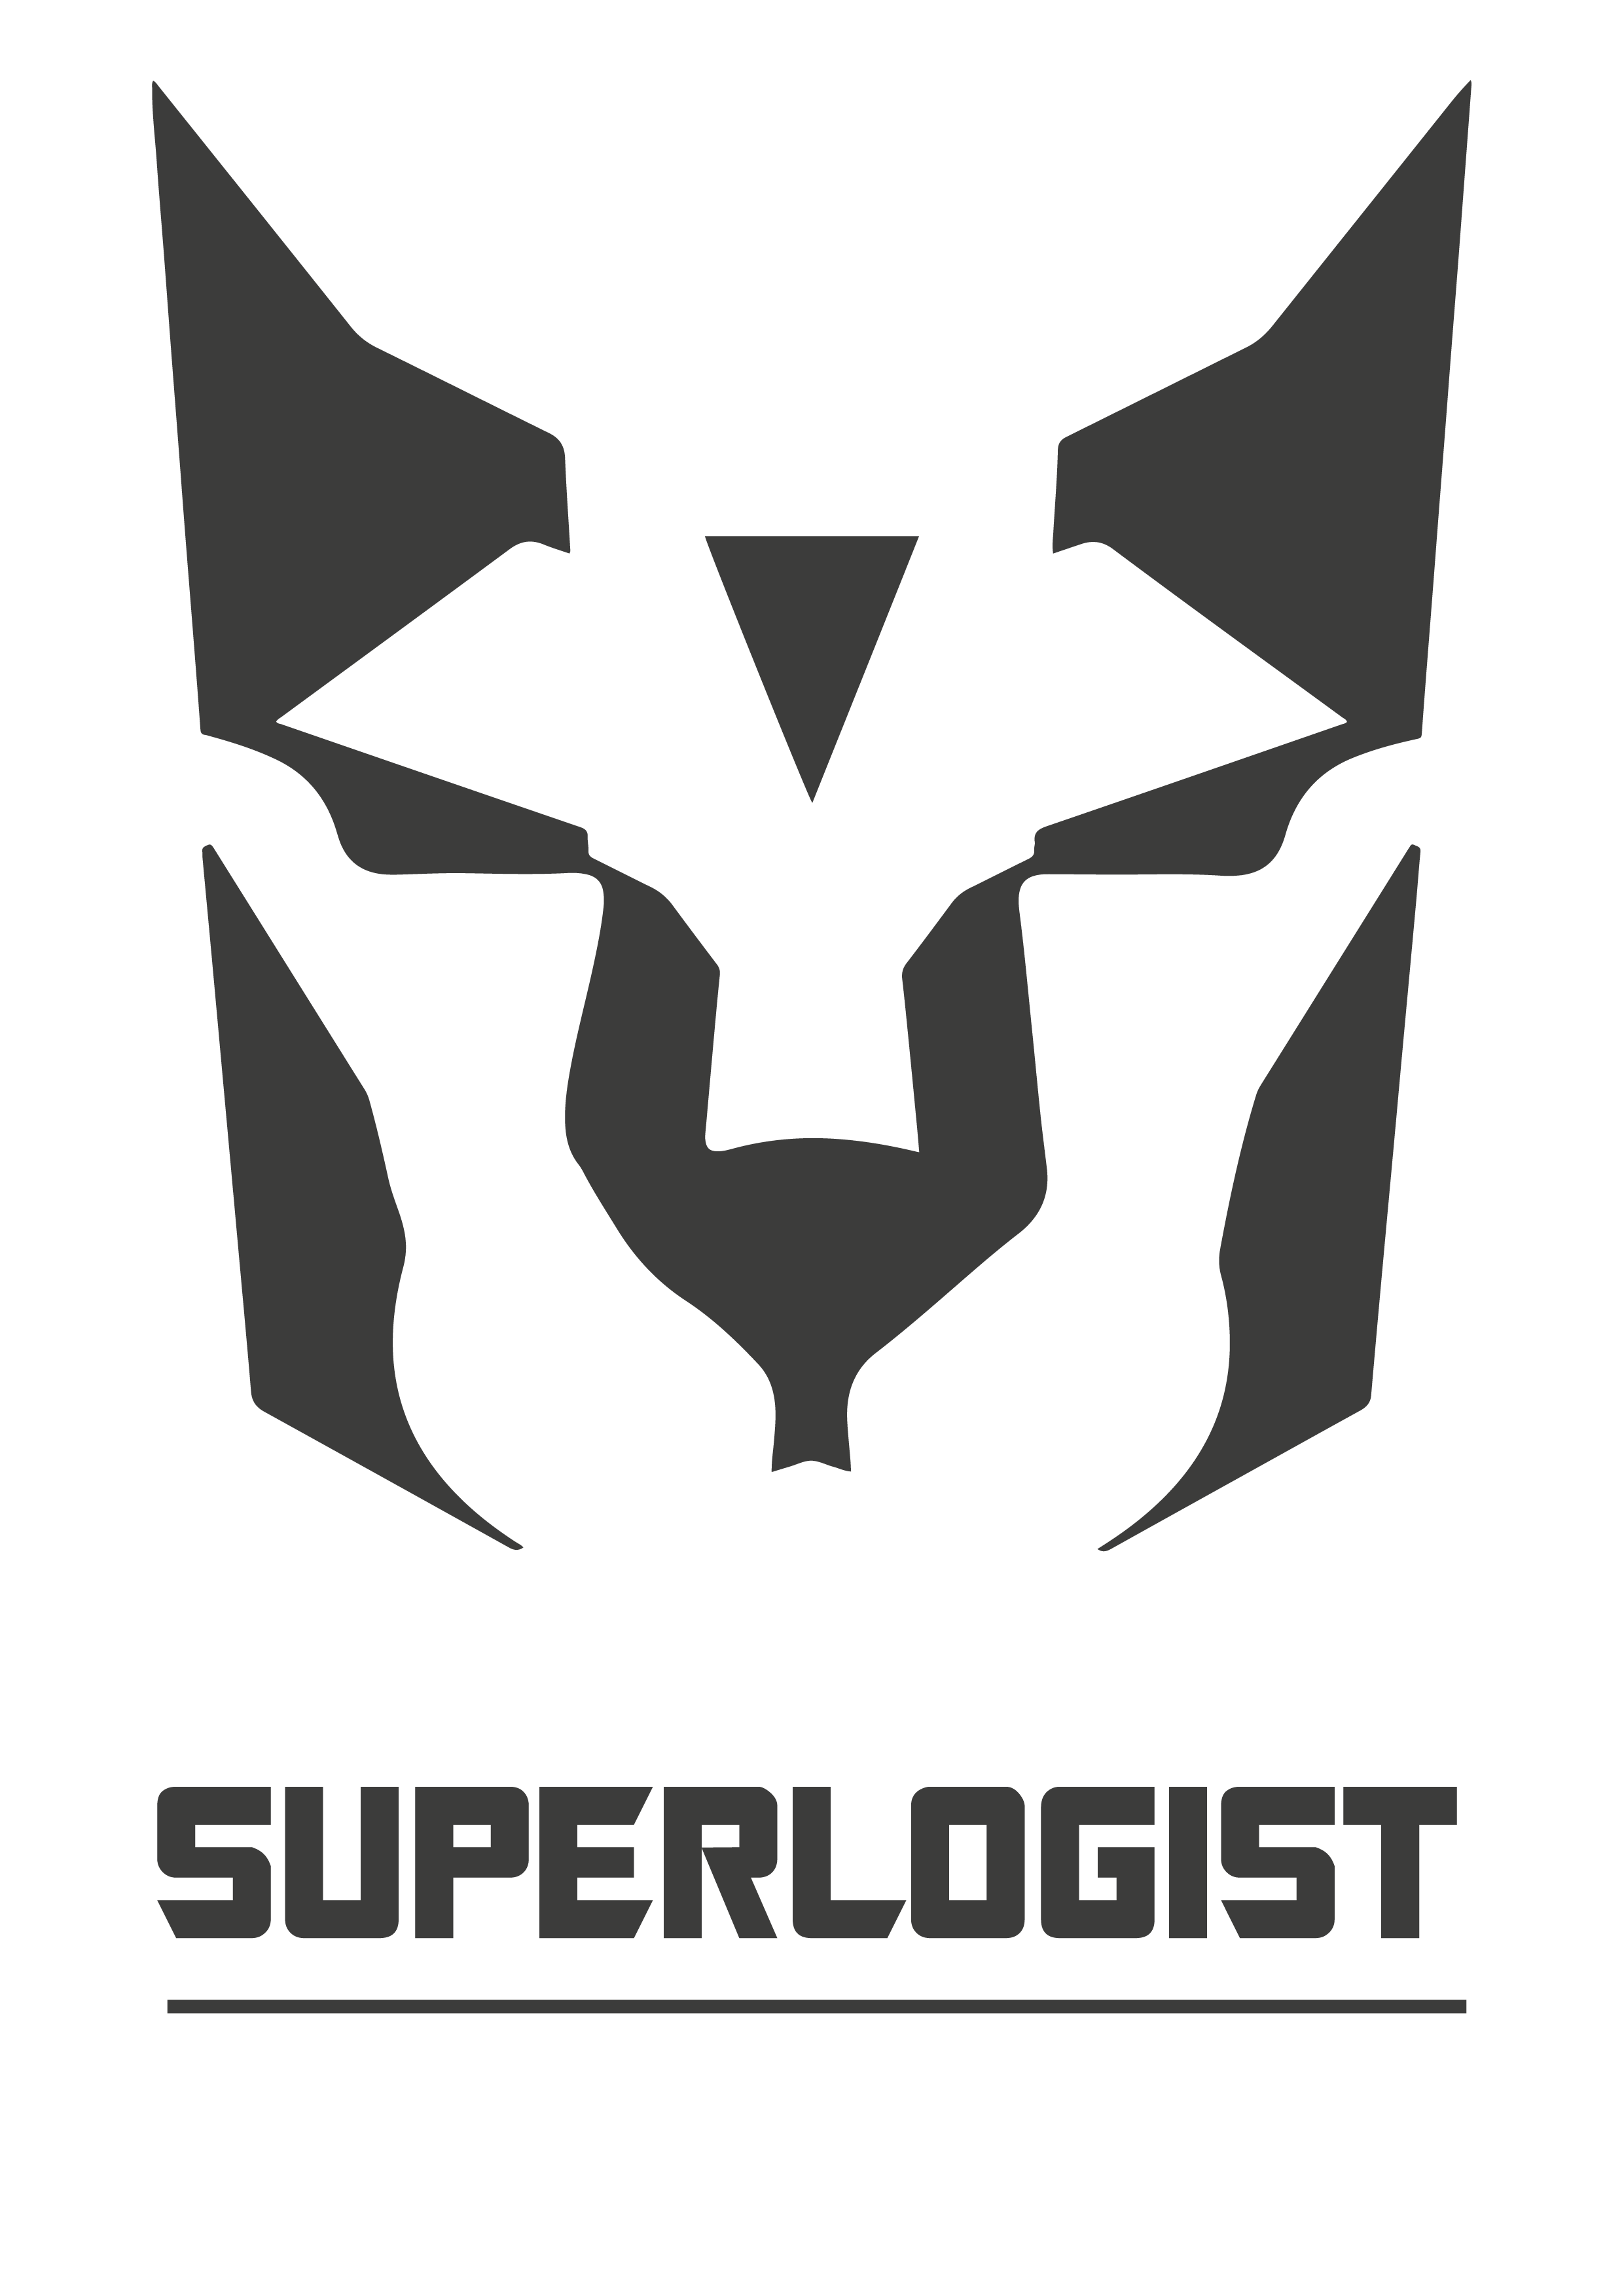 SuperLogist